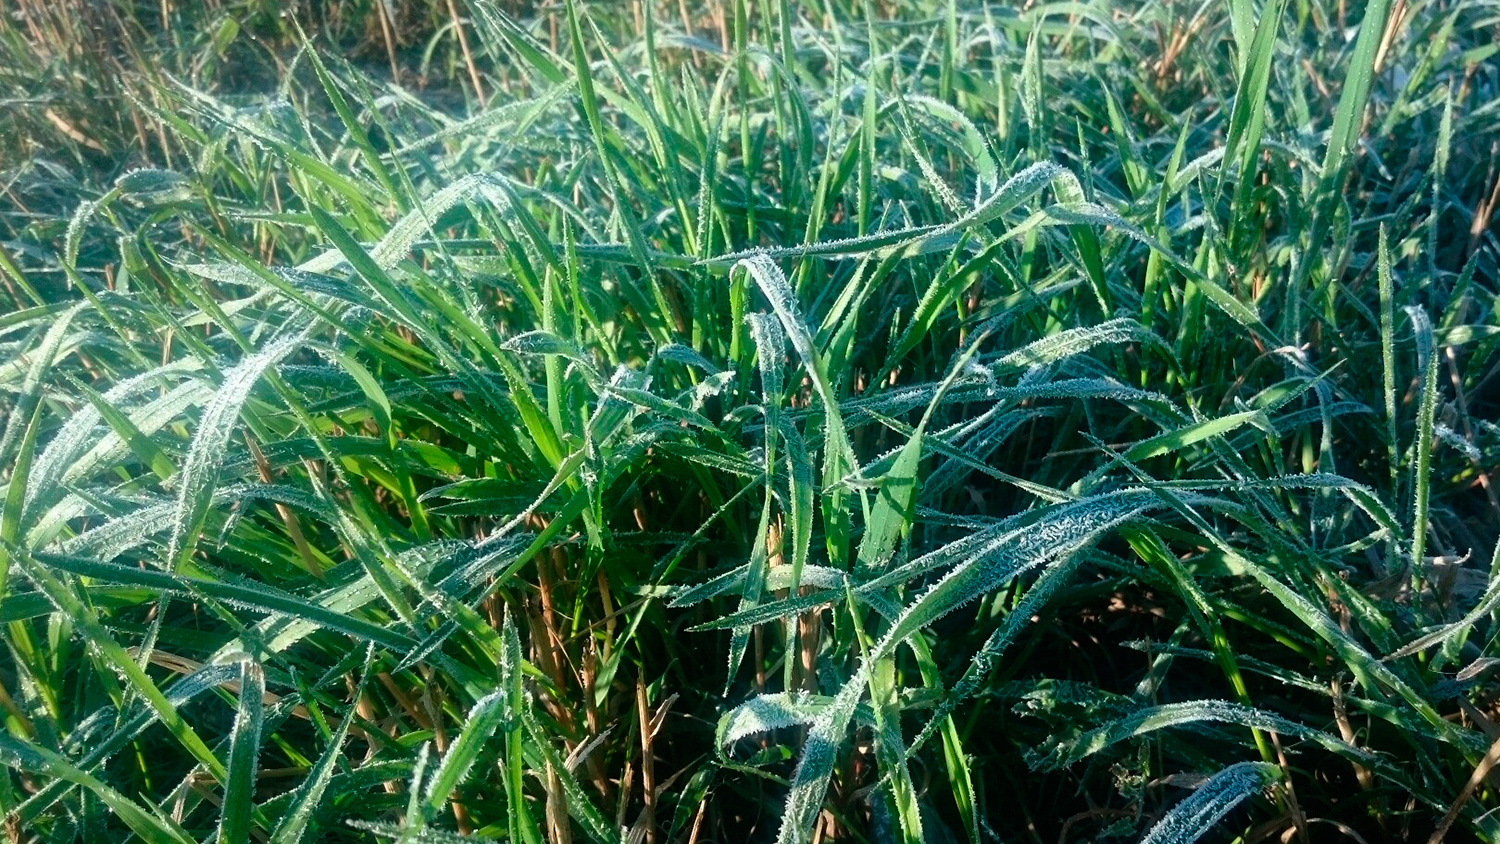 Непогода против дачников: май с заморозками до -5 градусов и градом грозит уничтожить урожай — как спасти огород